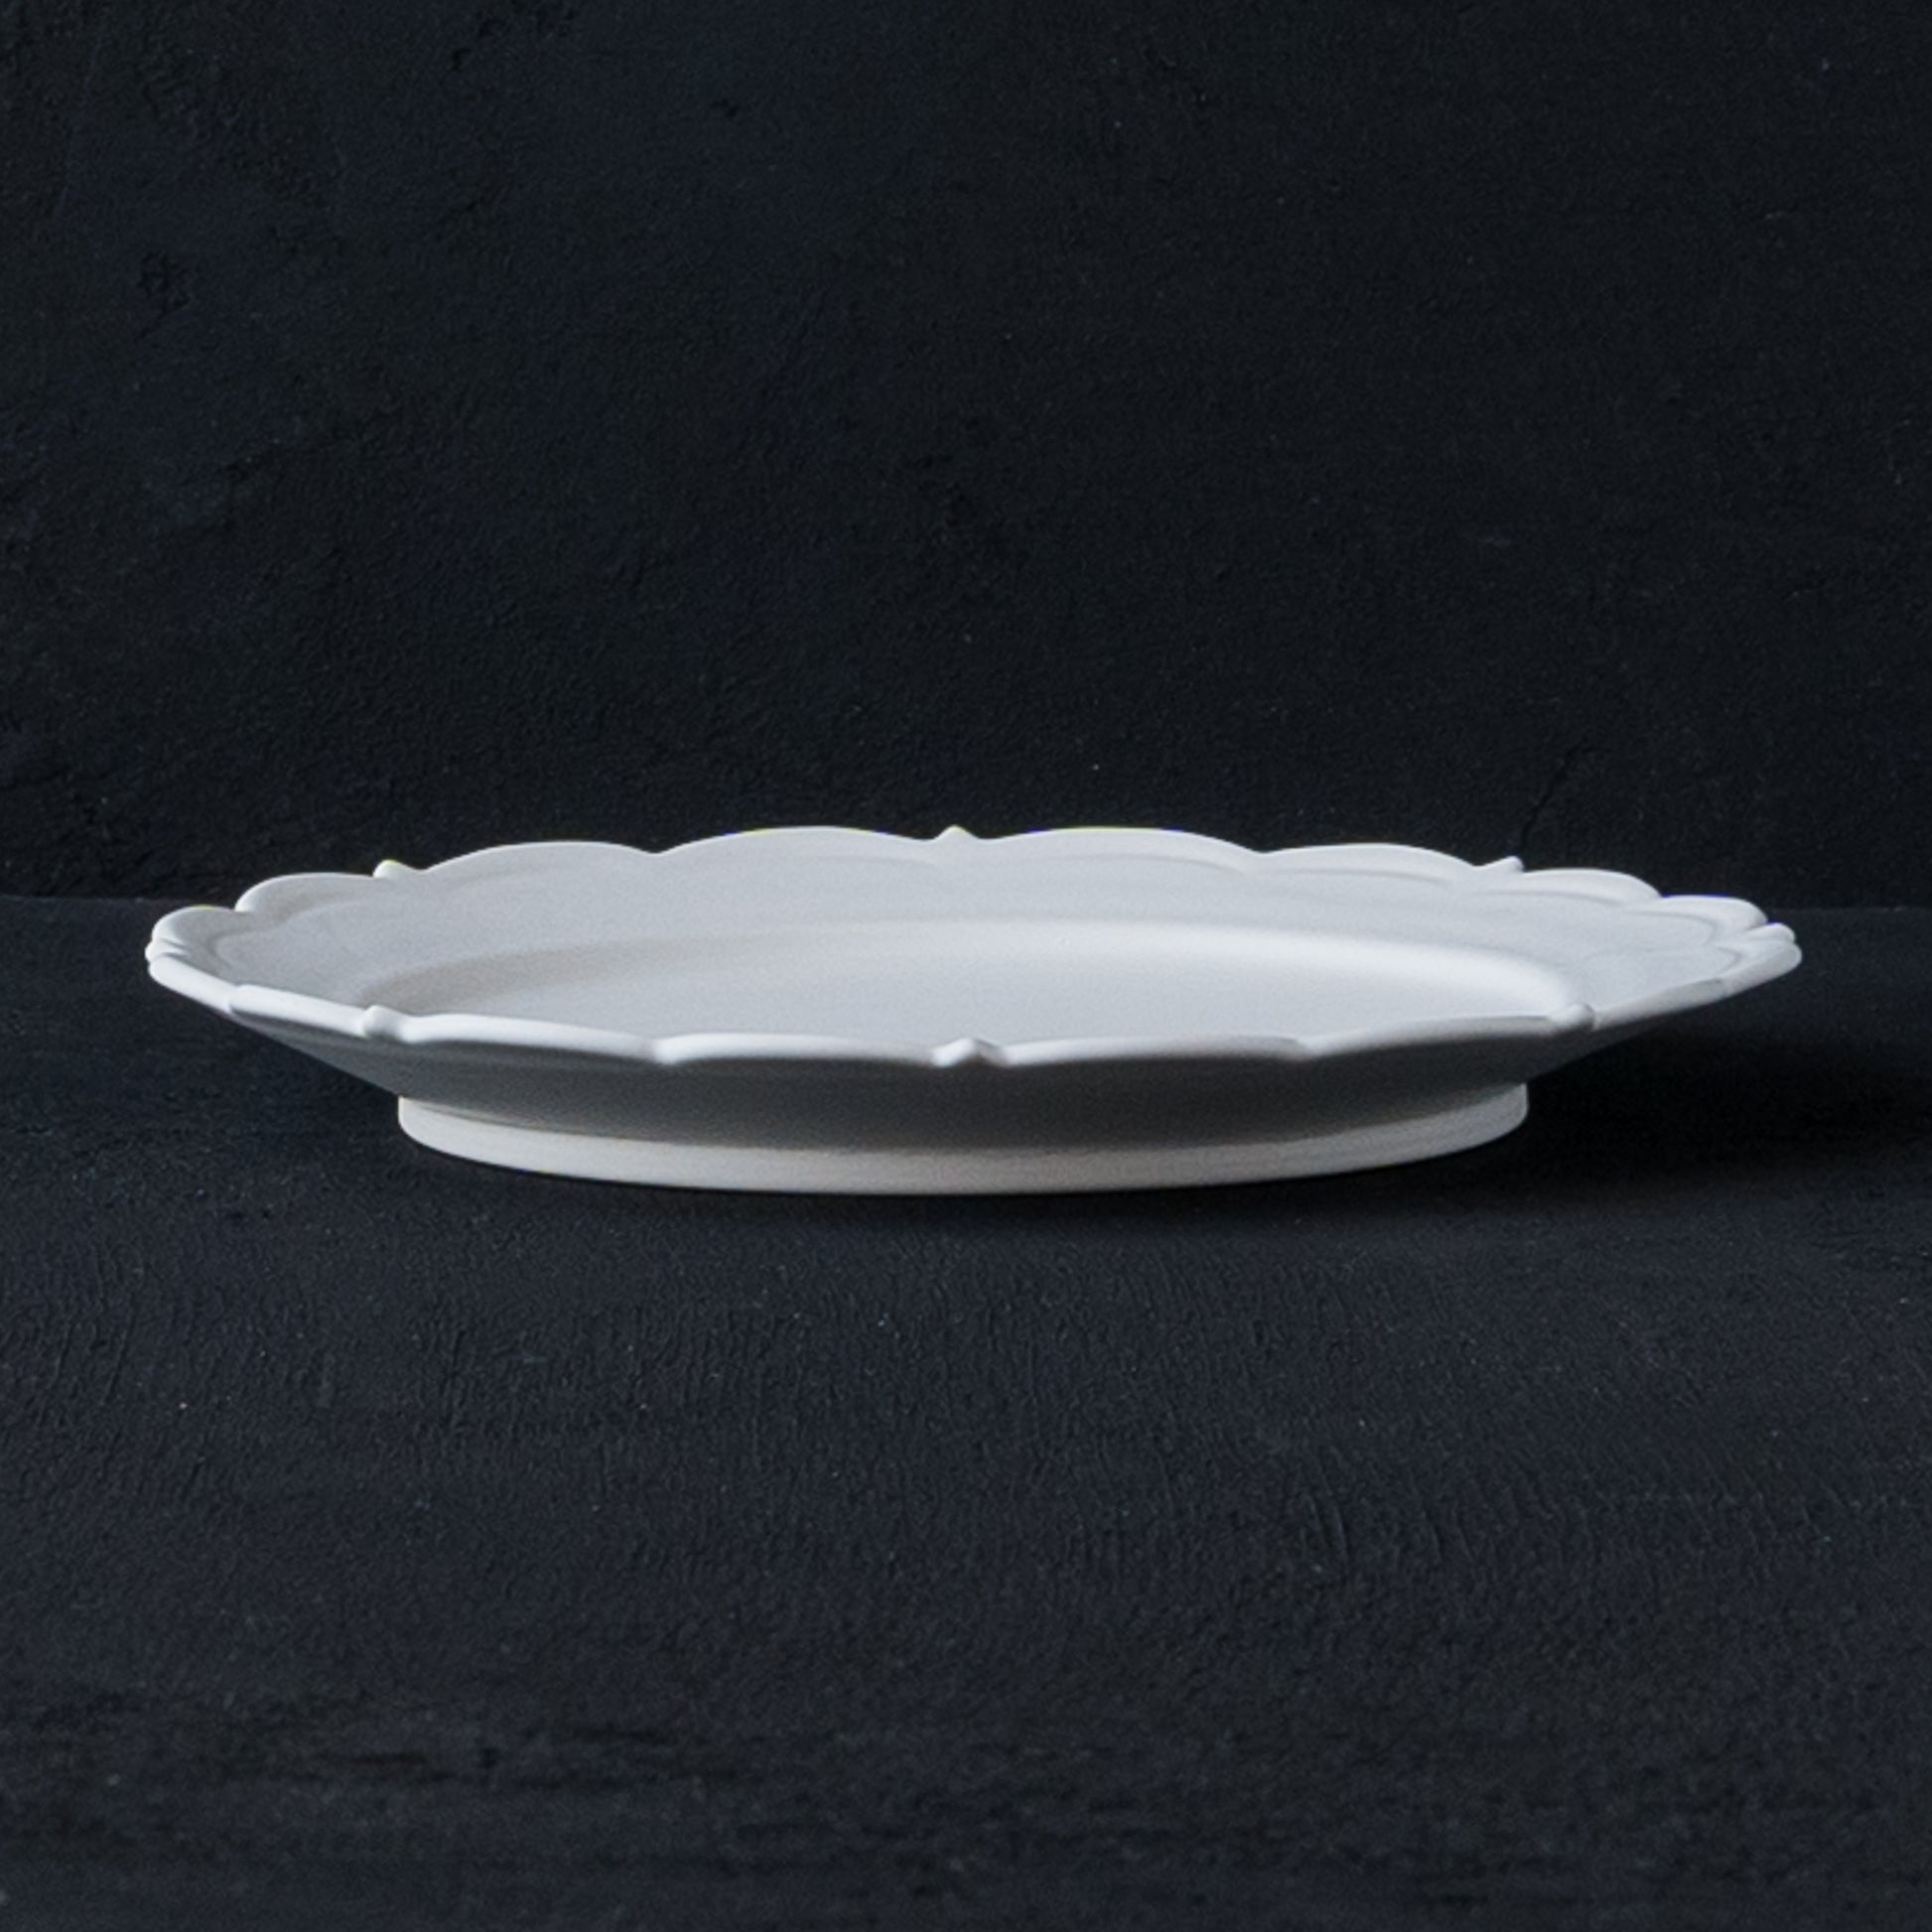 オムライスやサンドウィッチが素敵に引き立つ藤村佳澄さんの7寸レリーフ皿